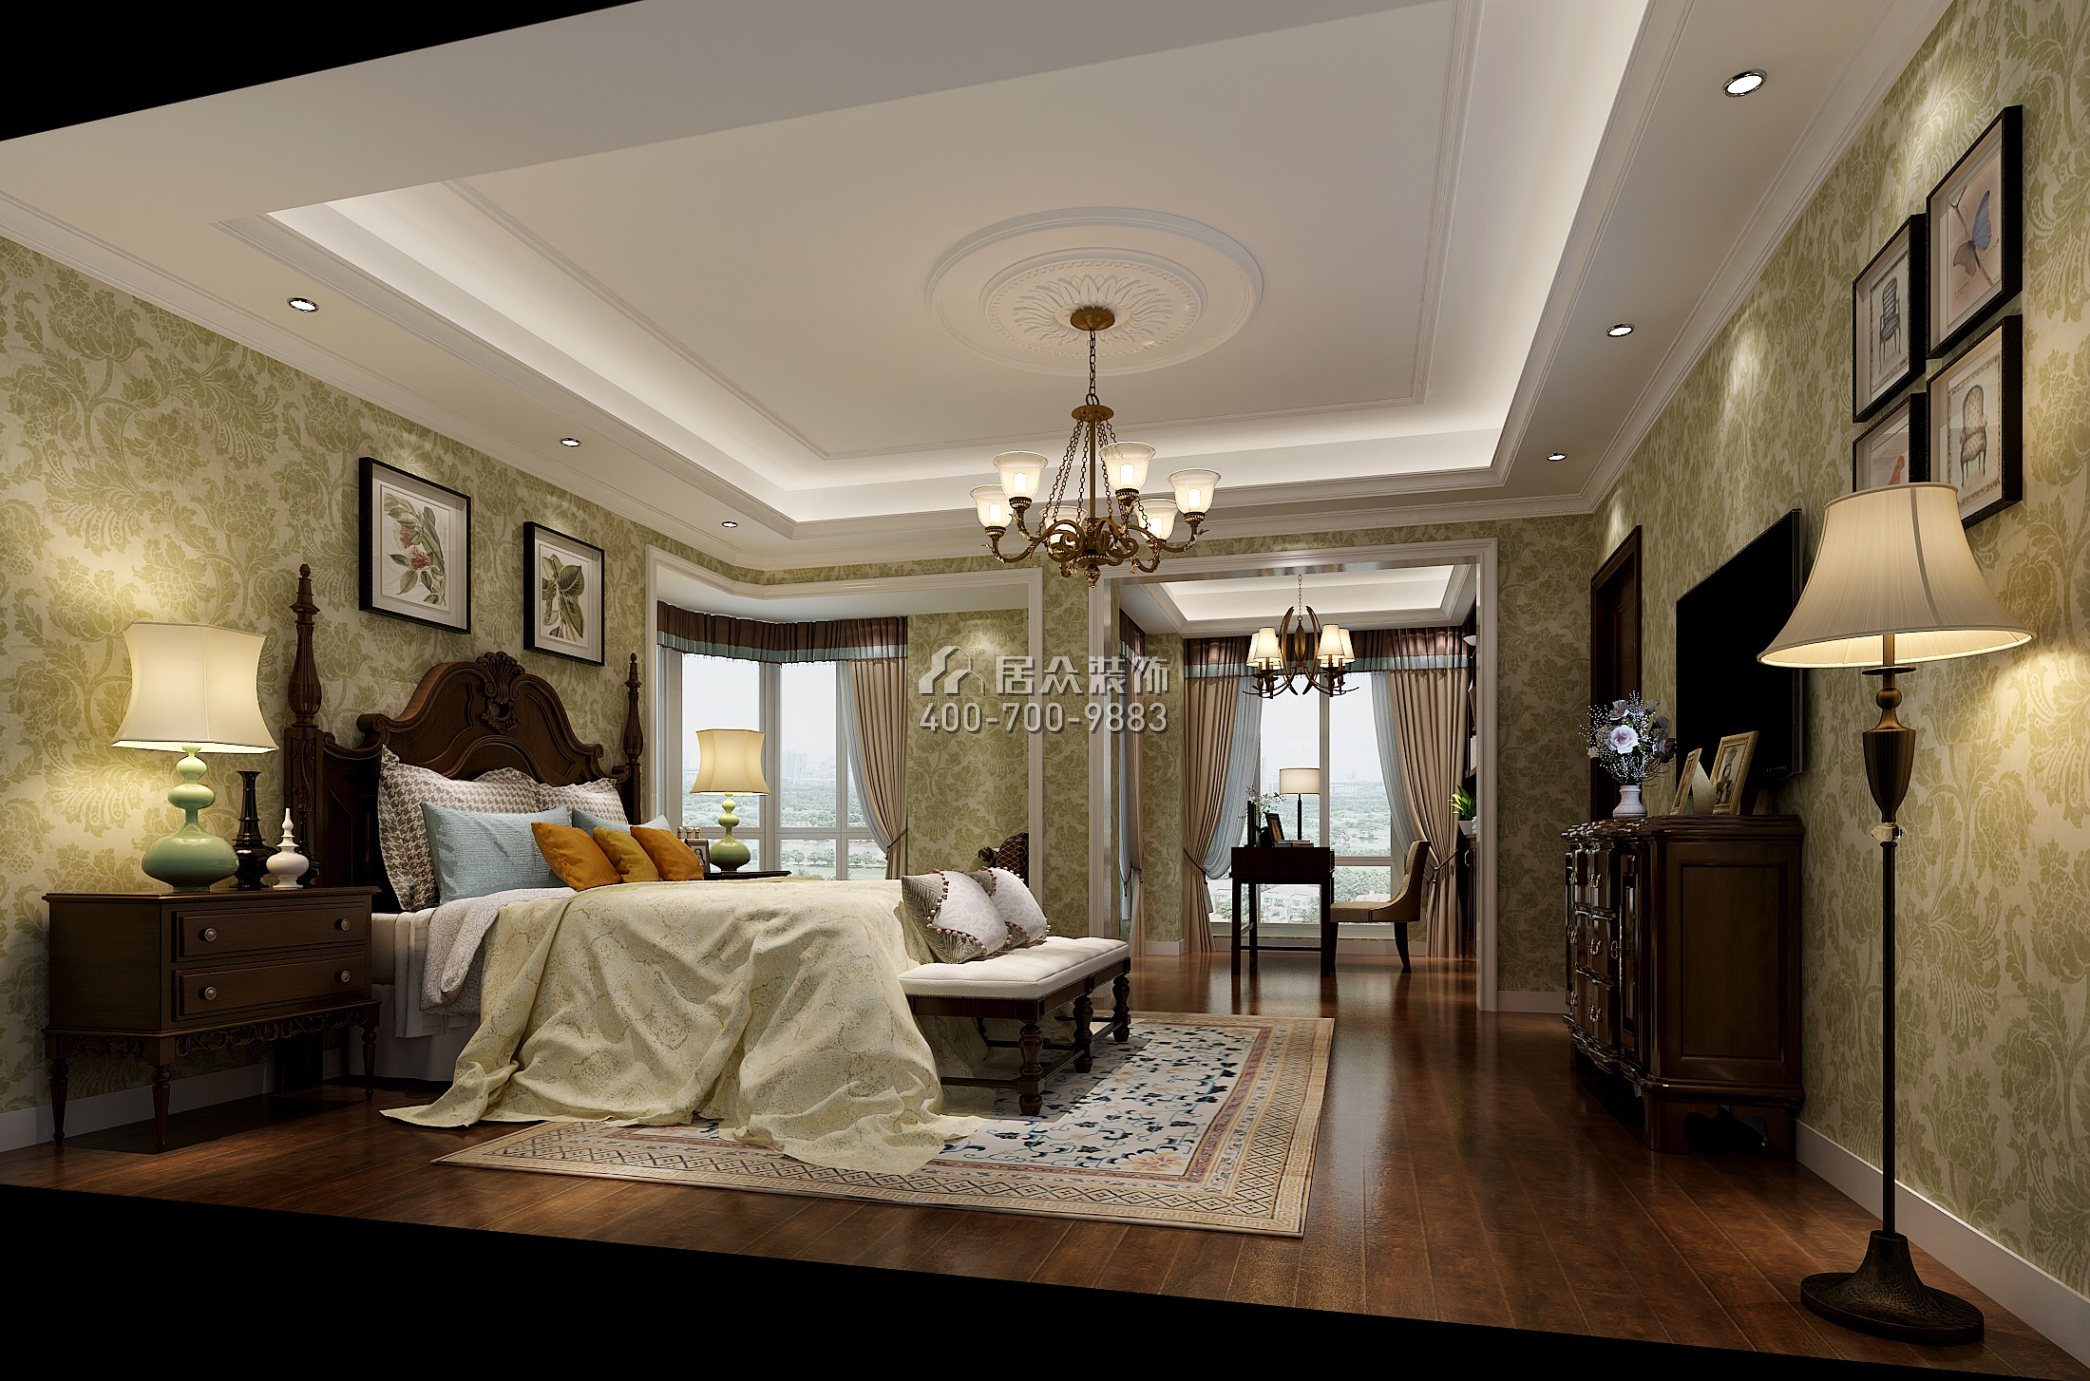 保利城小区280平方米美式风格复式户型卧室装修效果图